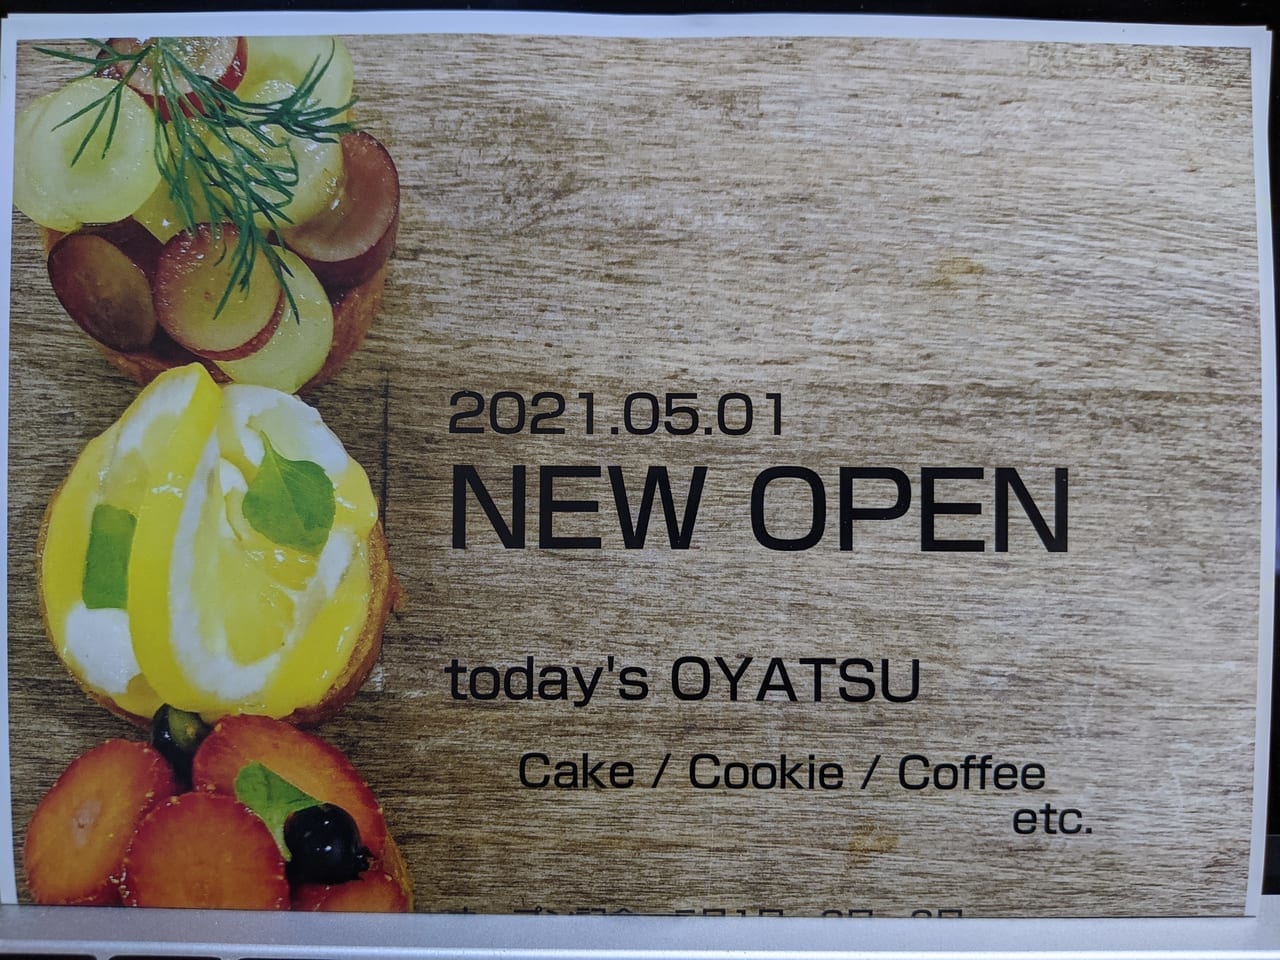 江東区千田にオープンしたtoday's OYATSUのオープンチラシ